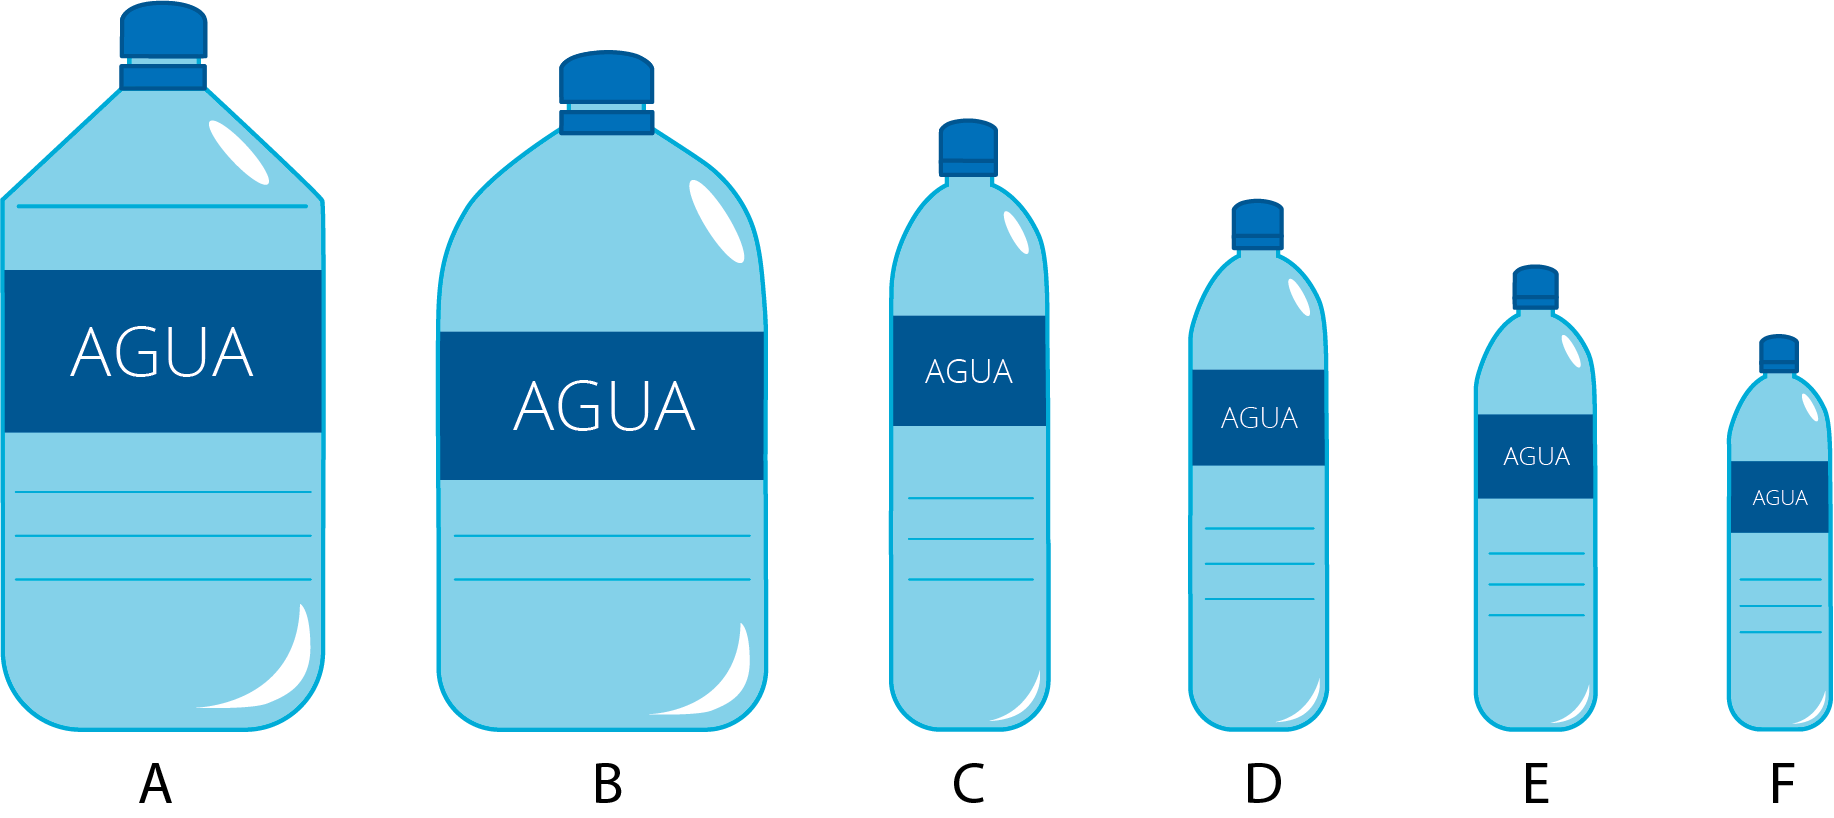 6 botellas de agua de distintos tamaños, ordenadas de la más grande a la más pequeña, marcadas con las letras de la A a la F. La botella A es la más grande y la botella F es la más pequeña.